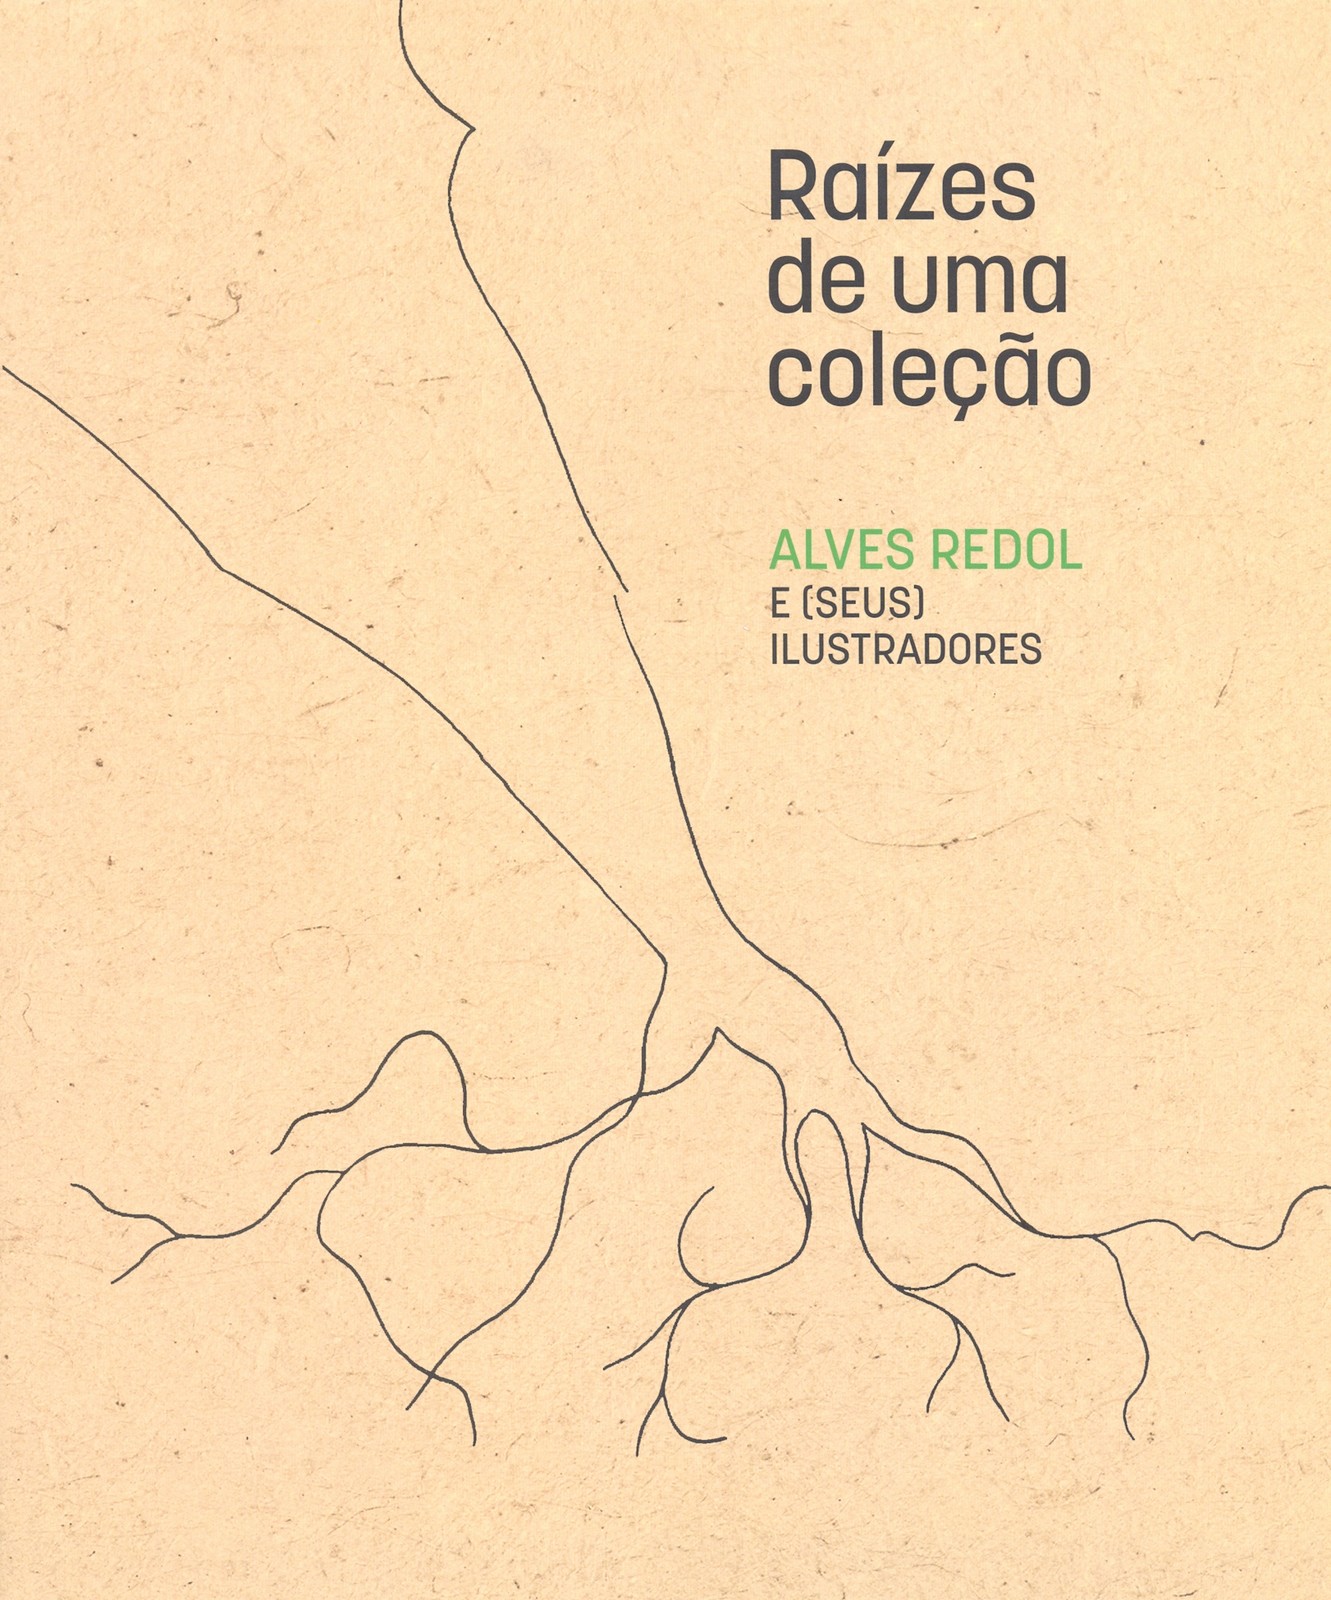 Catálogo da Exposição Raízes de uma Coleção, Alves Redol e (seus) ilustradores